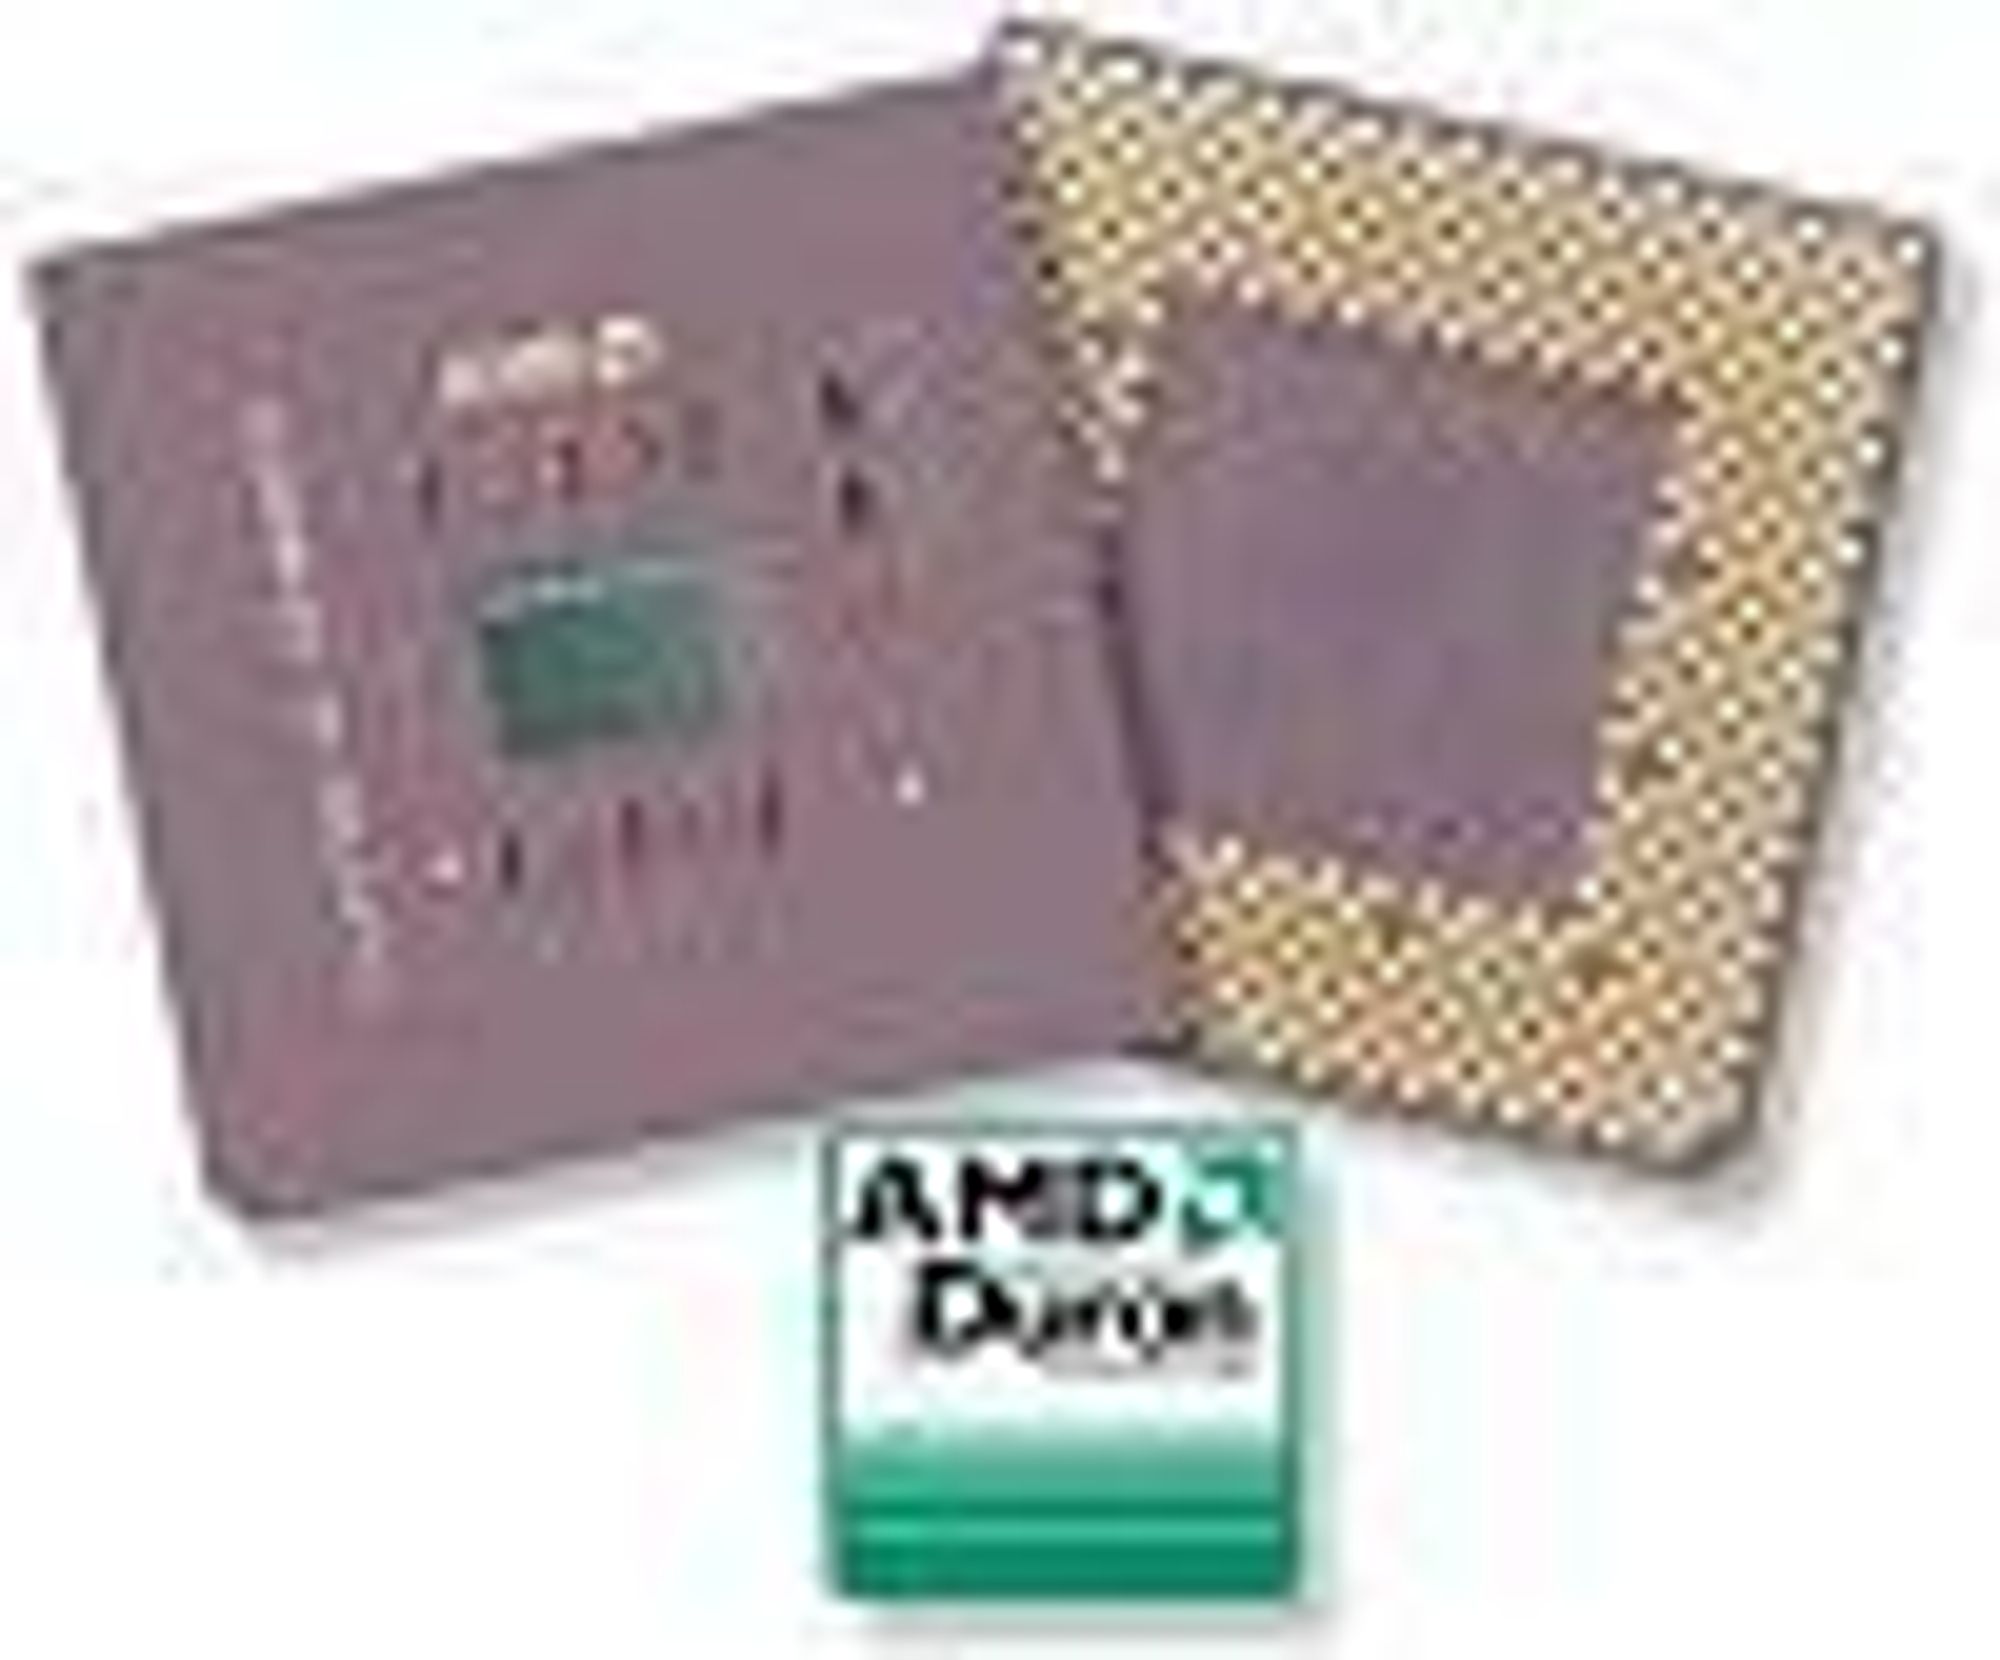 Eksempel på AMD Duron-prosessorer